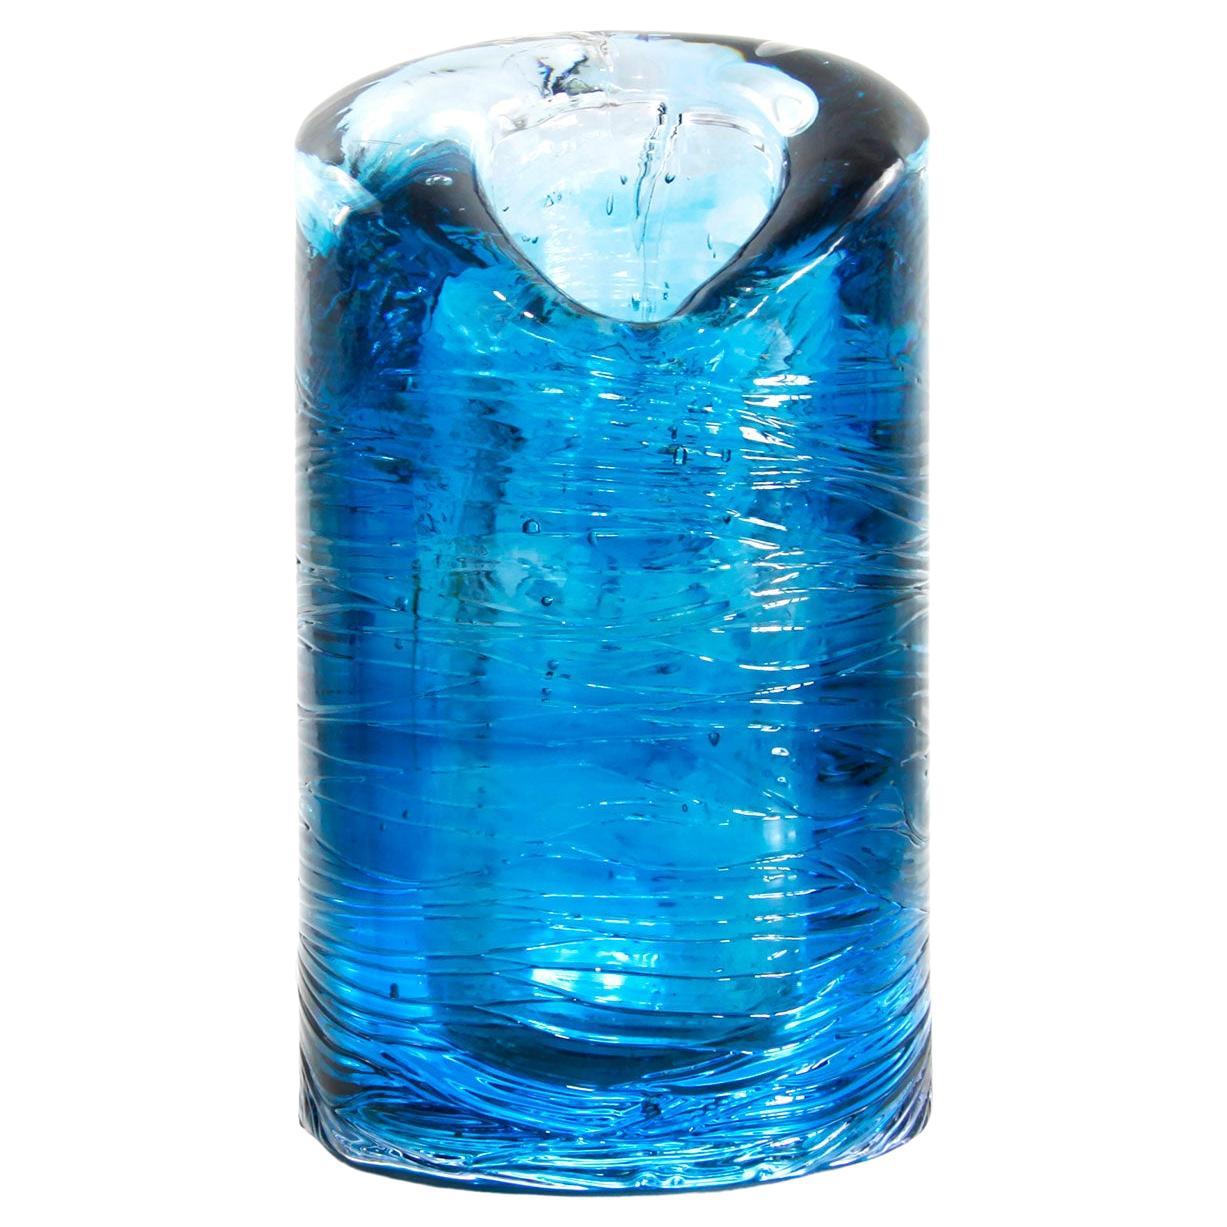 Jungle Contemporary Vase, Large Version in Monochrome Blue by Jacopo Foggini